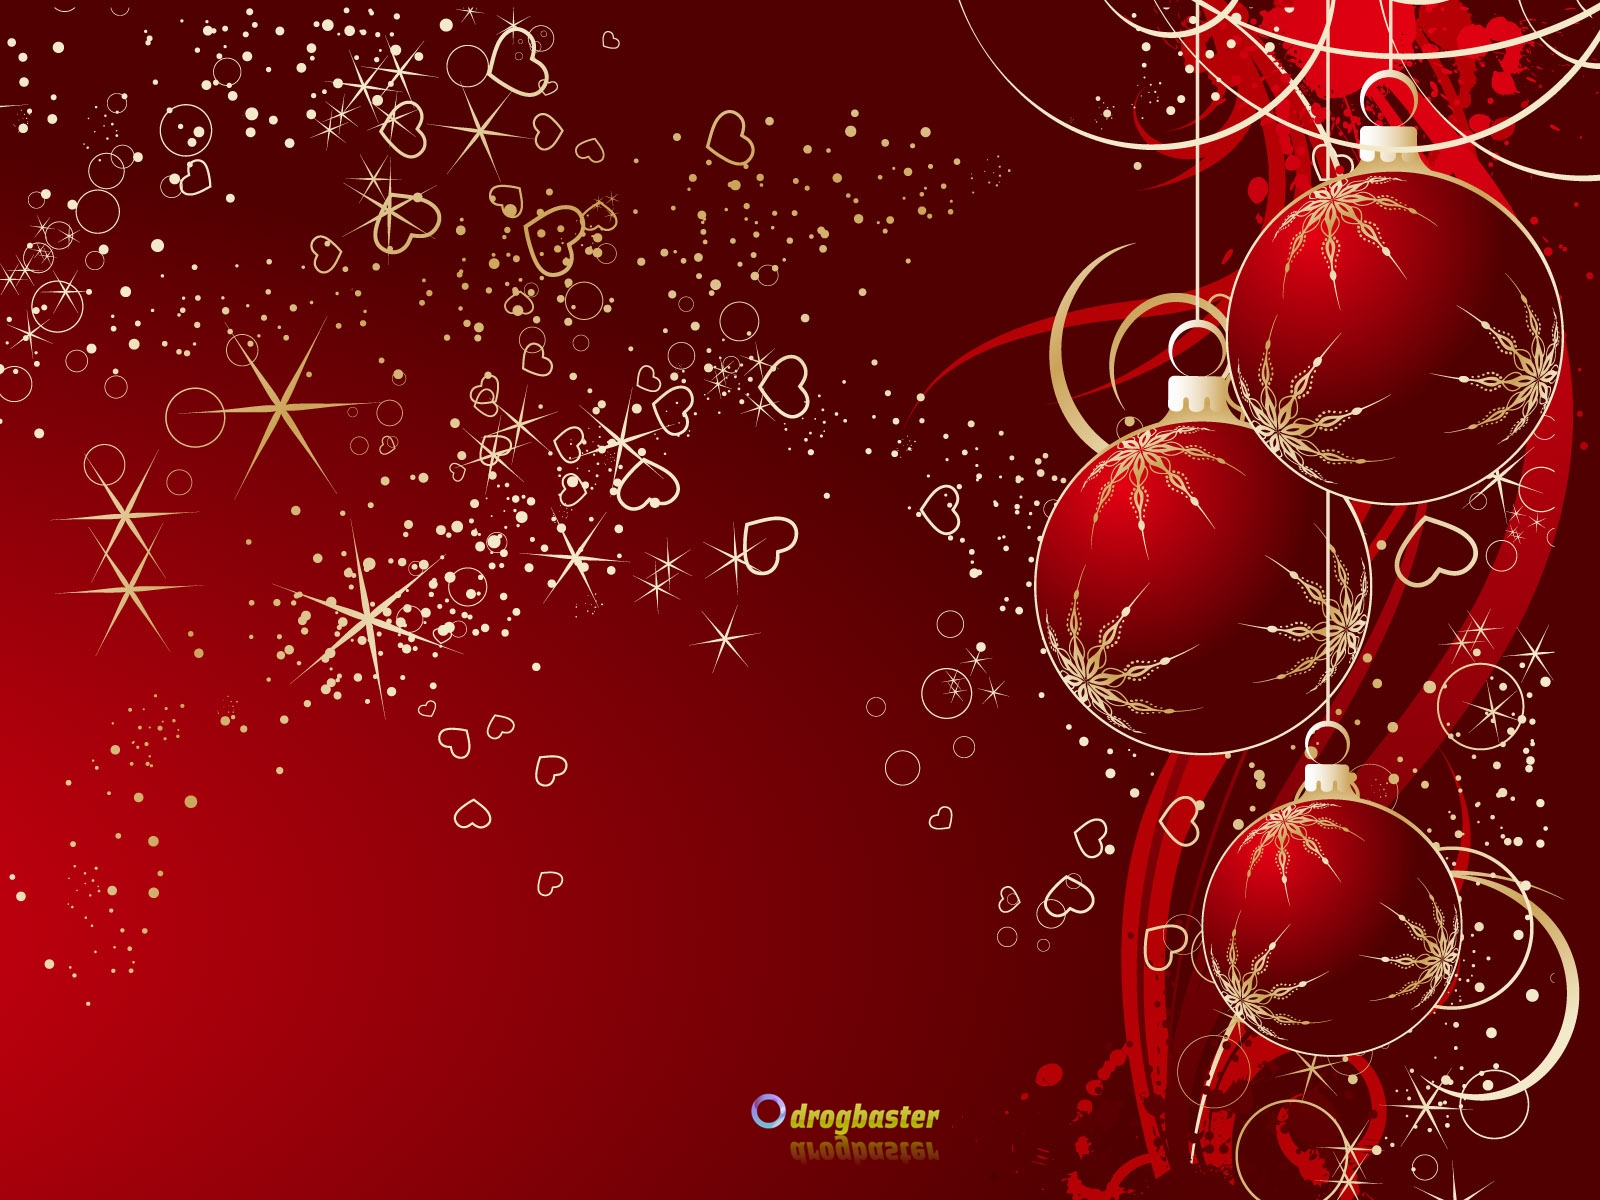 Sfondi Di Natale.Sfondi Immagini E Decori Di Natale Grafica Per Cellulare Android